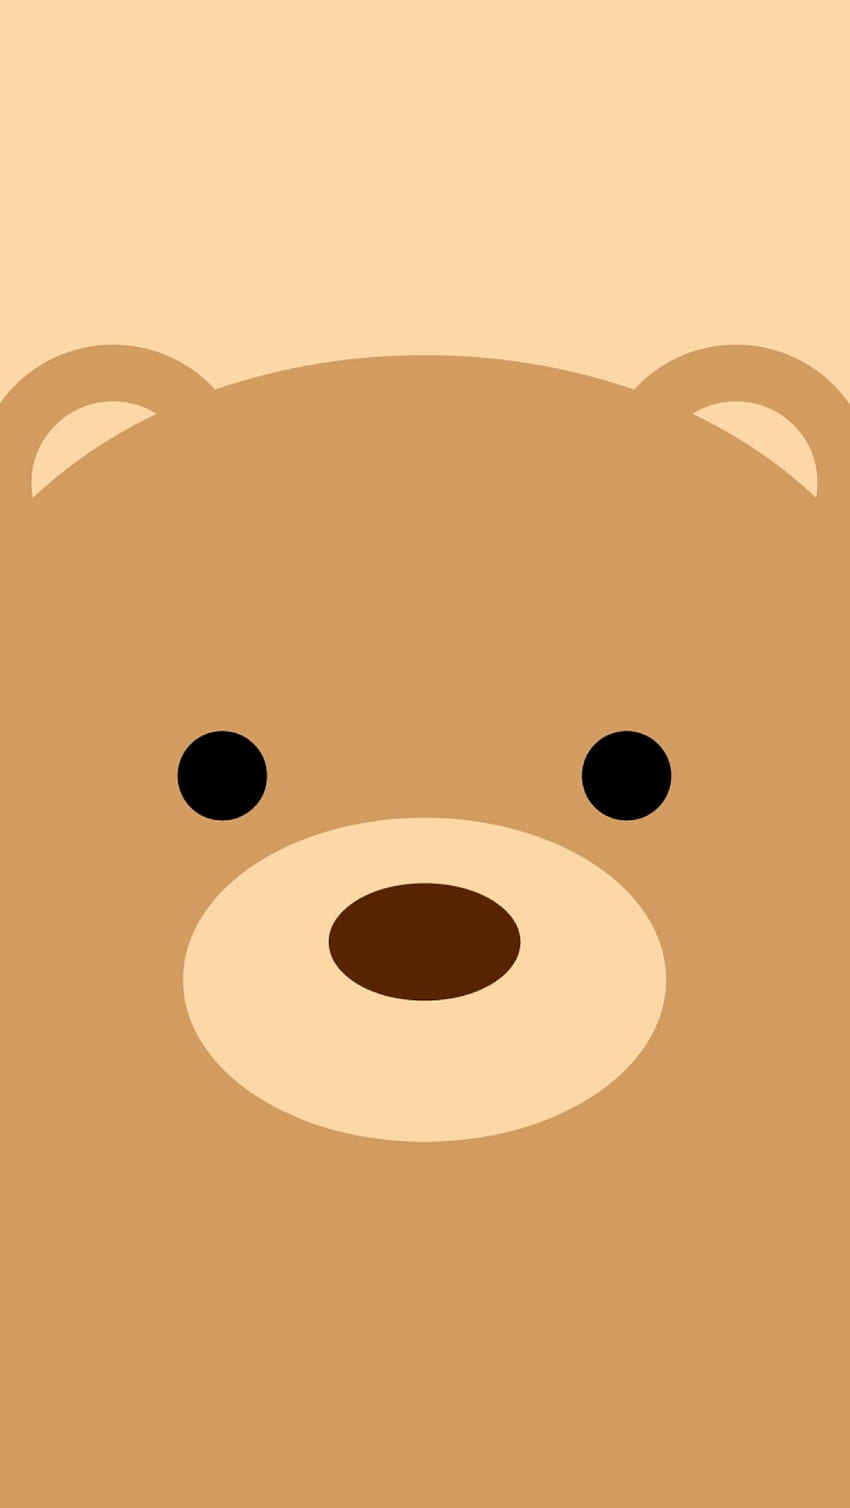 Cute bear for iphone - Búsqueda de Google, Teddy Bear Face HD phone ...